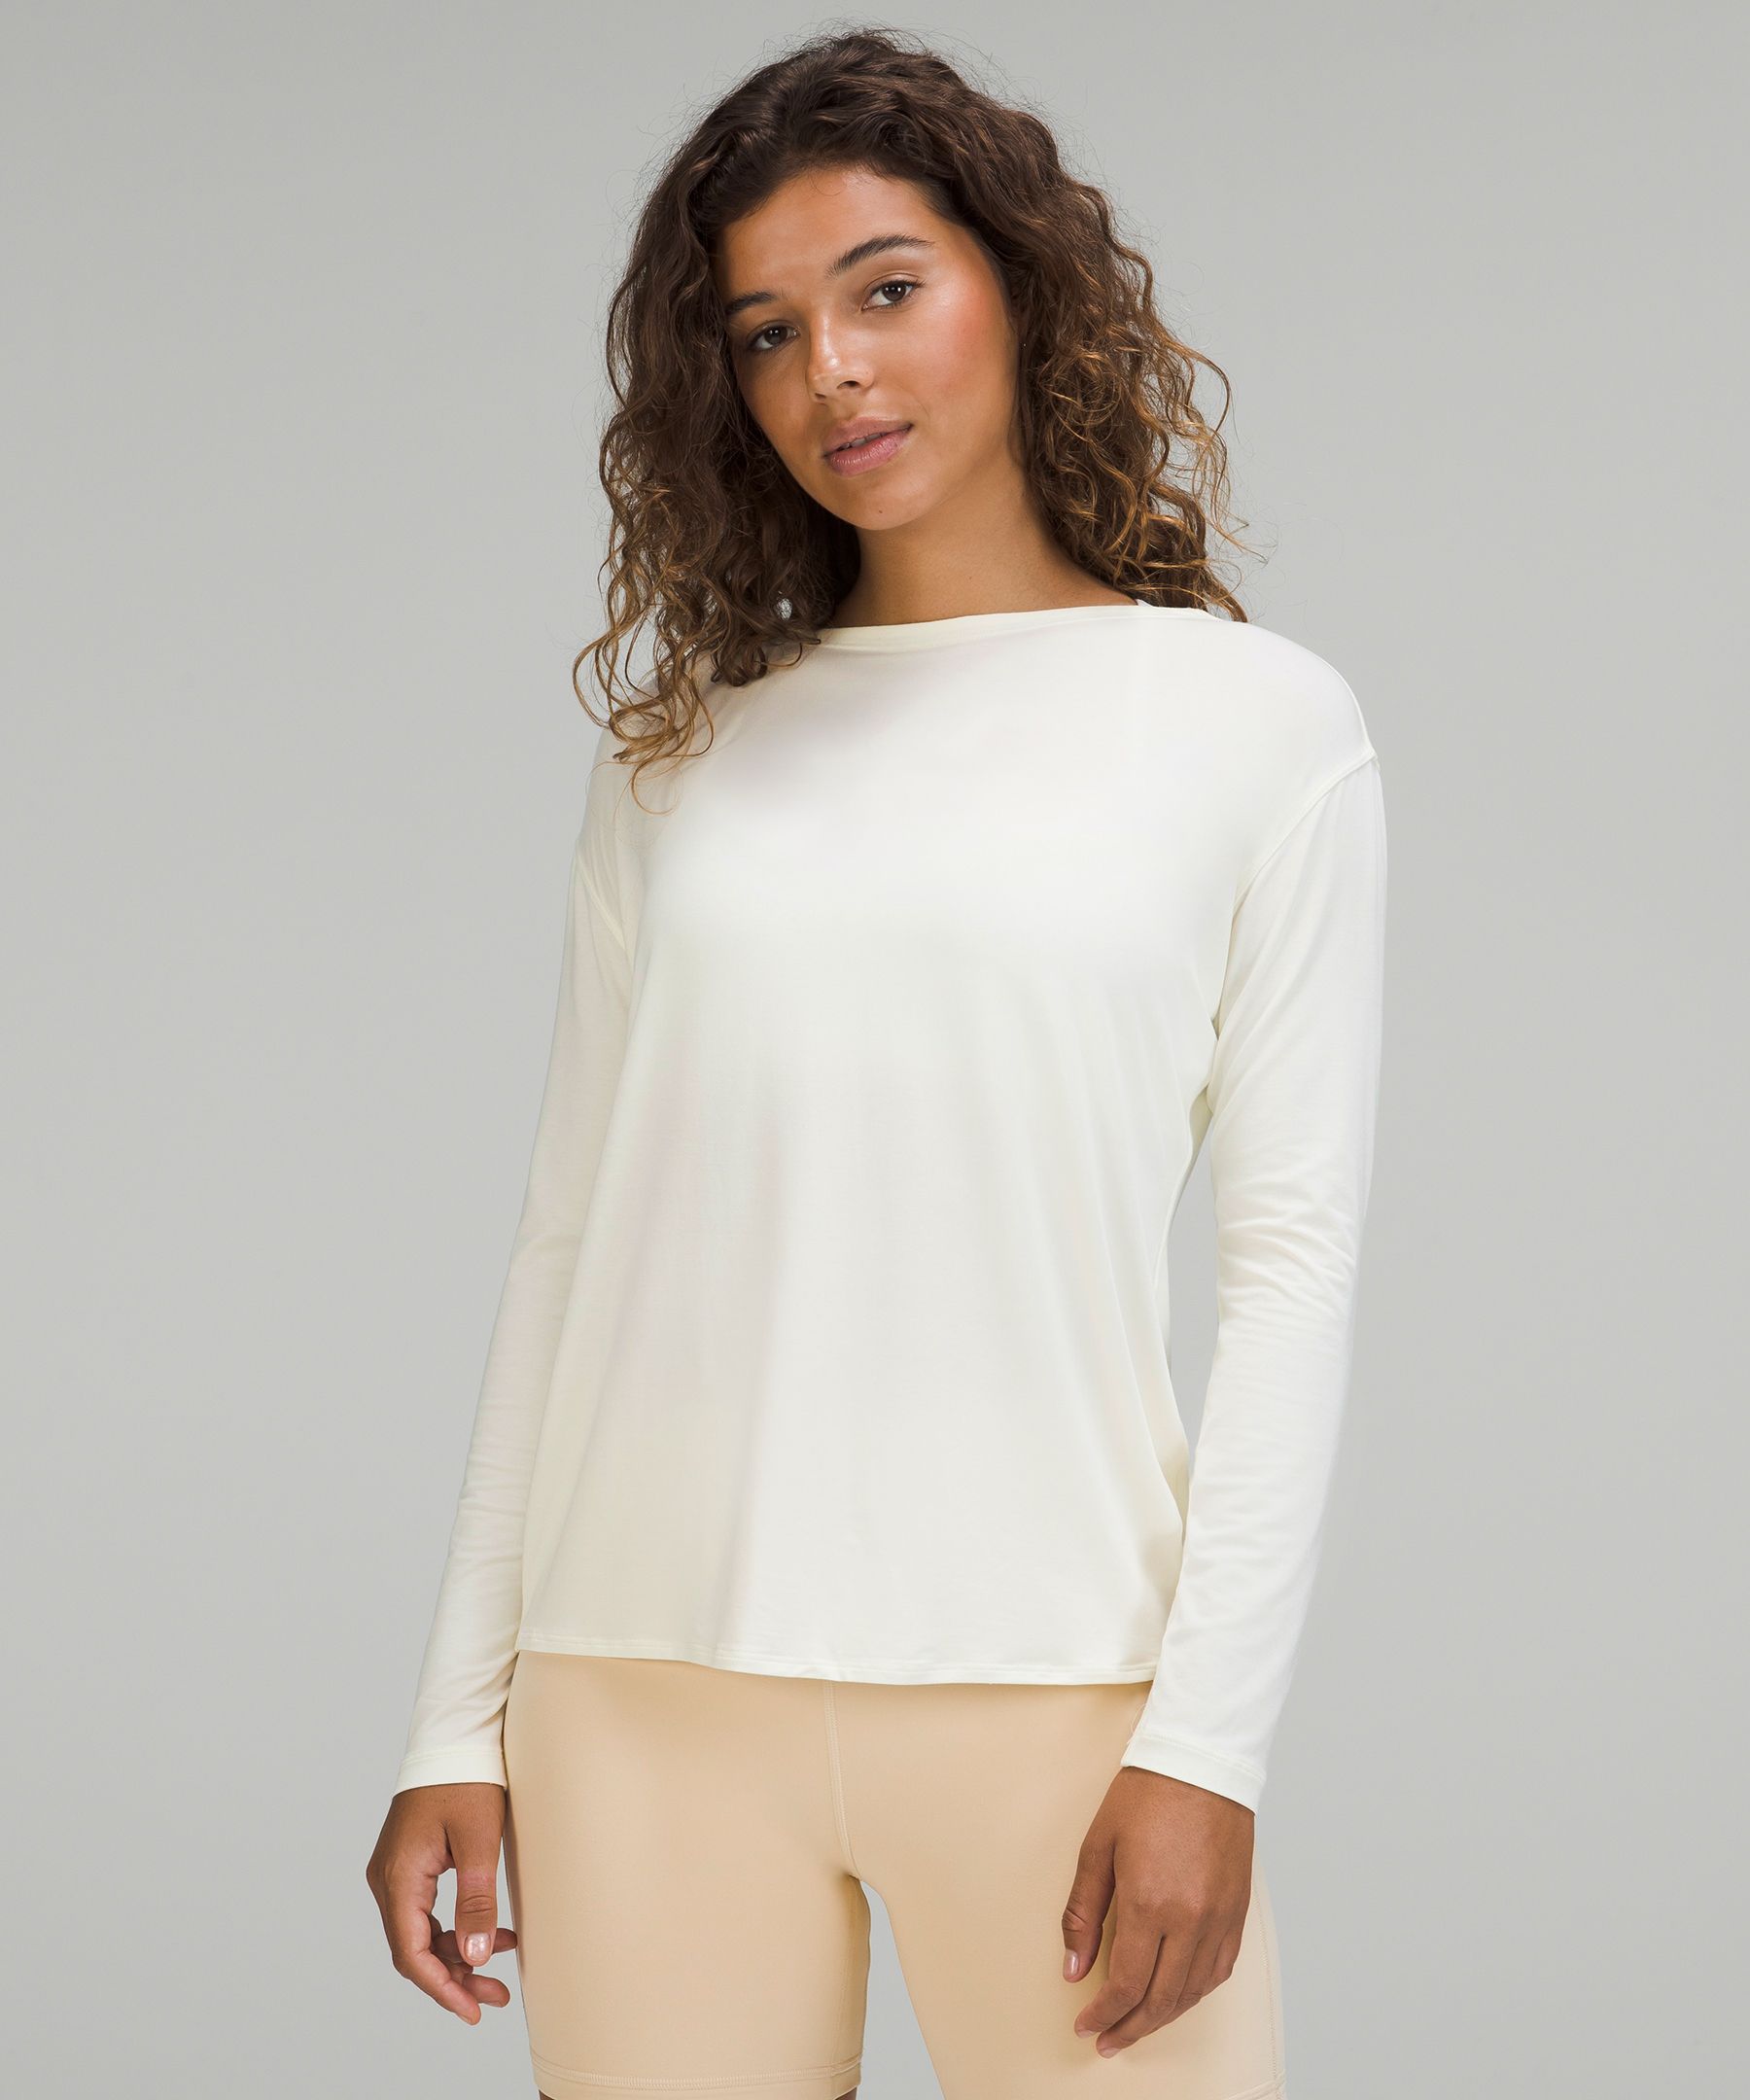 Lululemon Modal-Blend Open-Back Long Sleeve Shirt